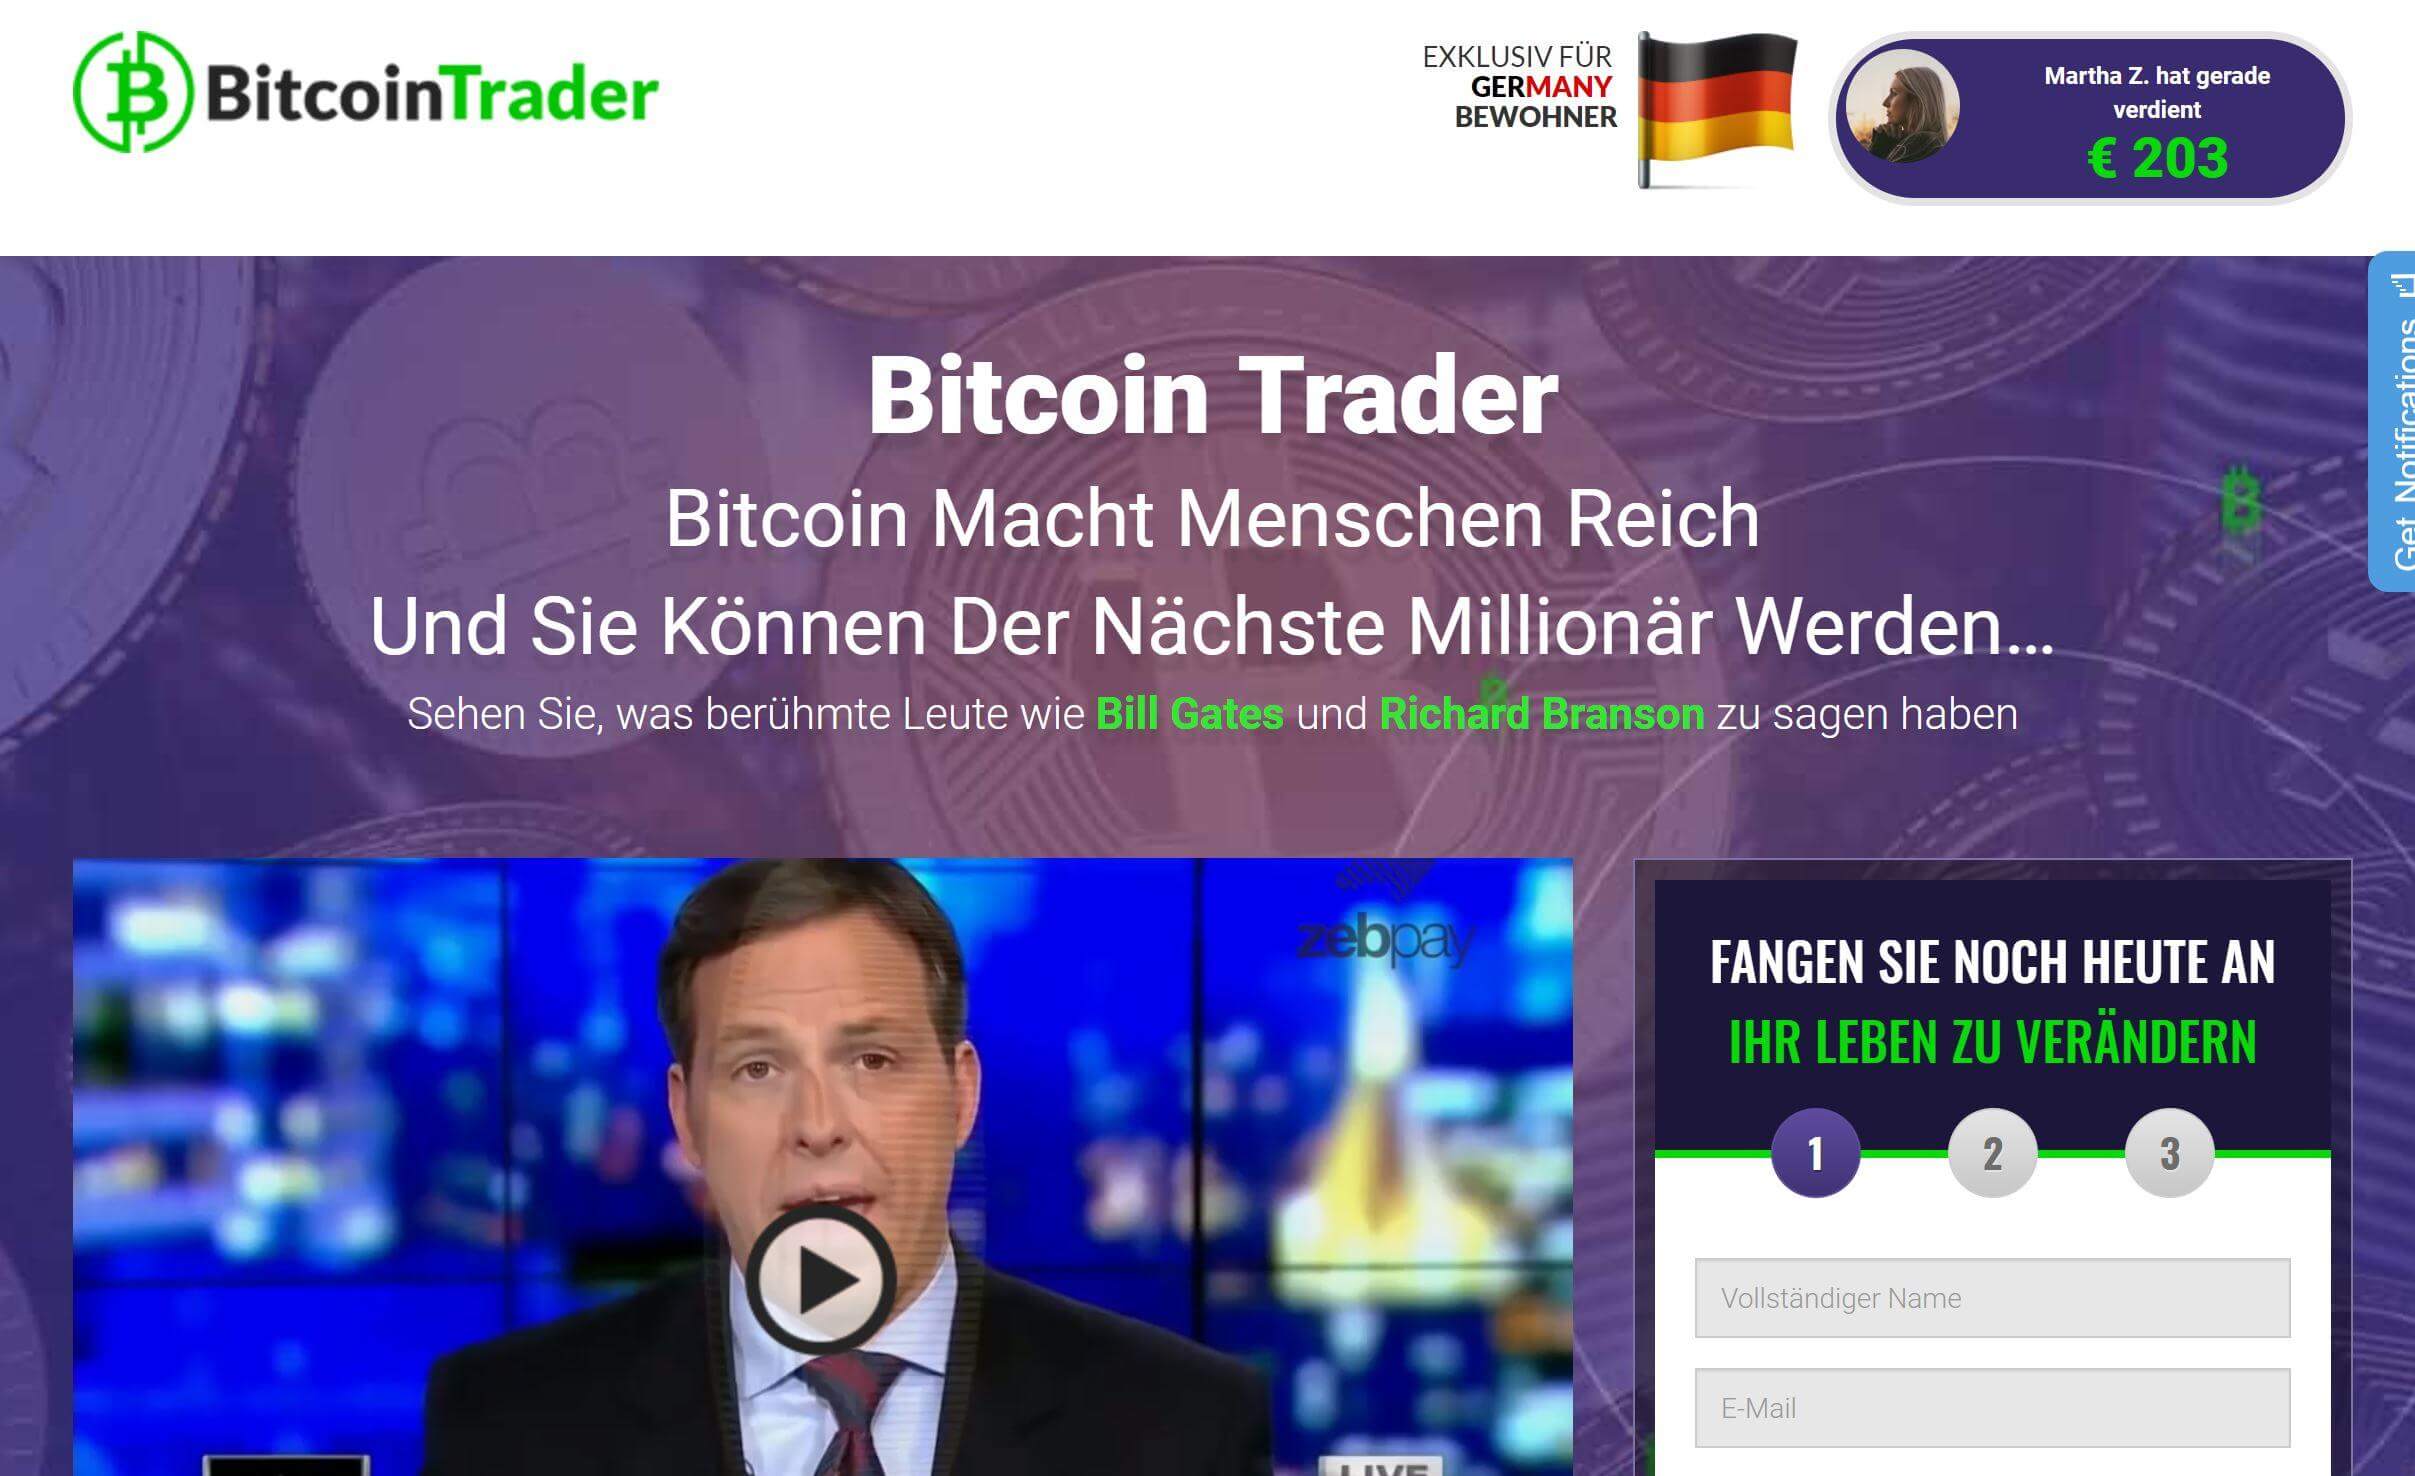 Ist der Bitcoin Trader seriös oder nicht?